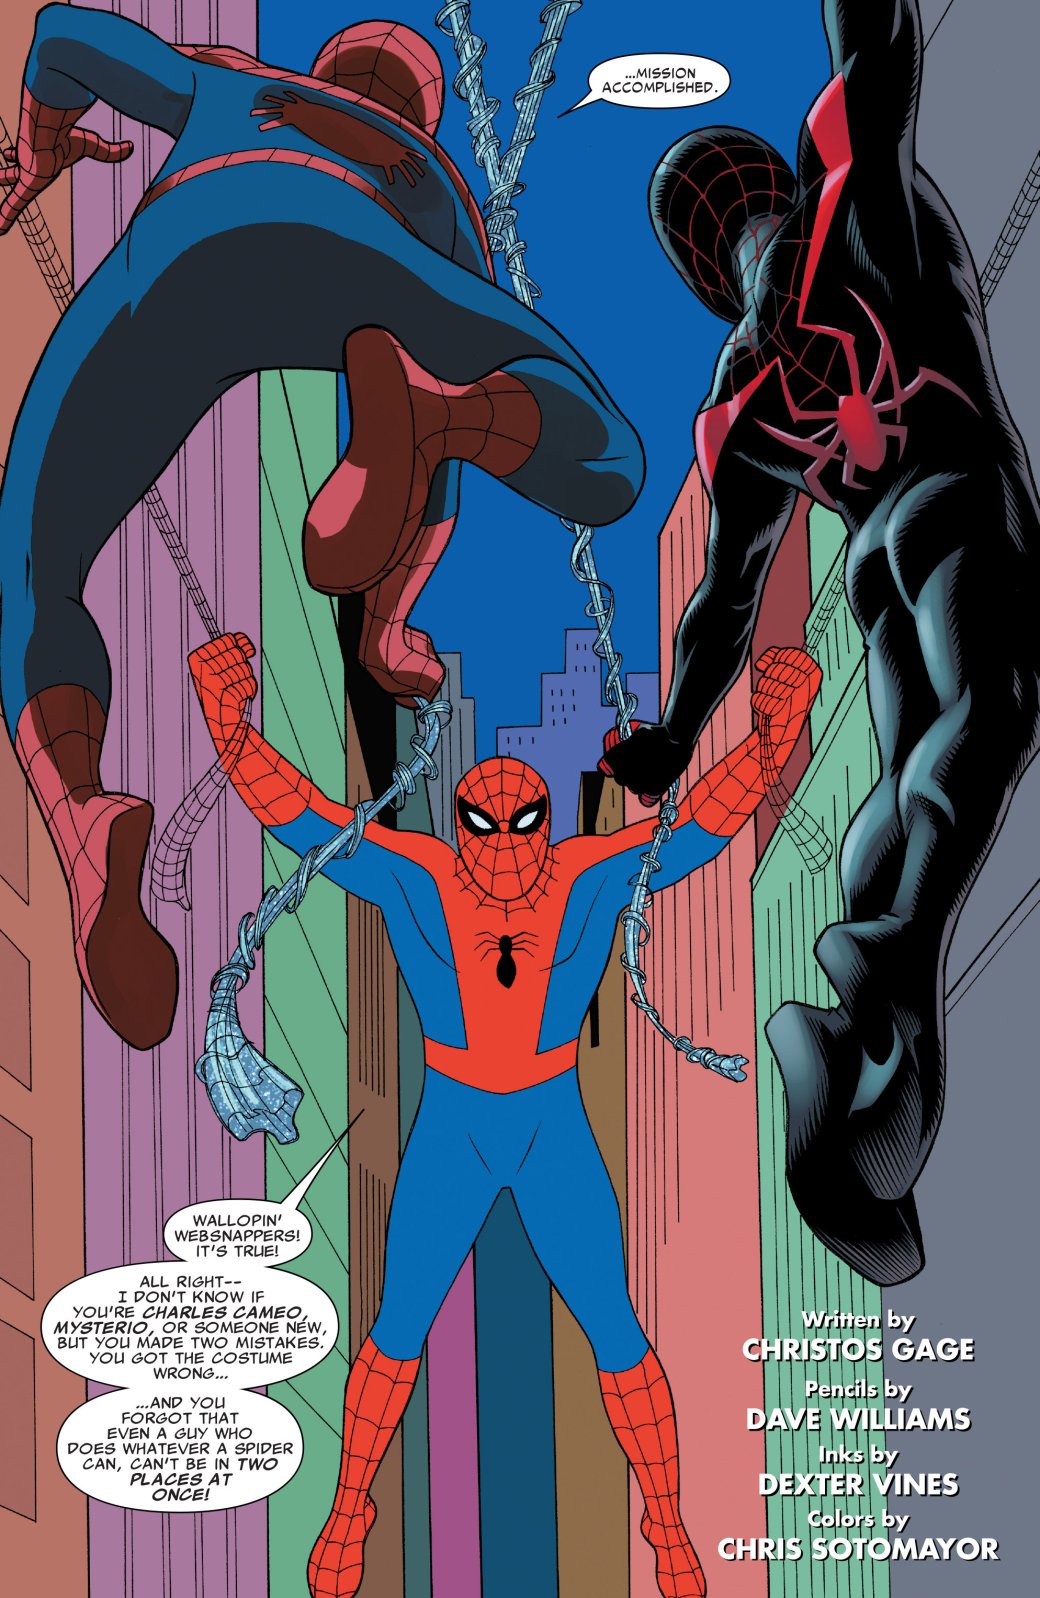 Галерея Что такое Spider-Verse? Кроссовер, где Человек-паук встретил безумные версии себя из других миров - 11 фото